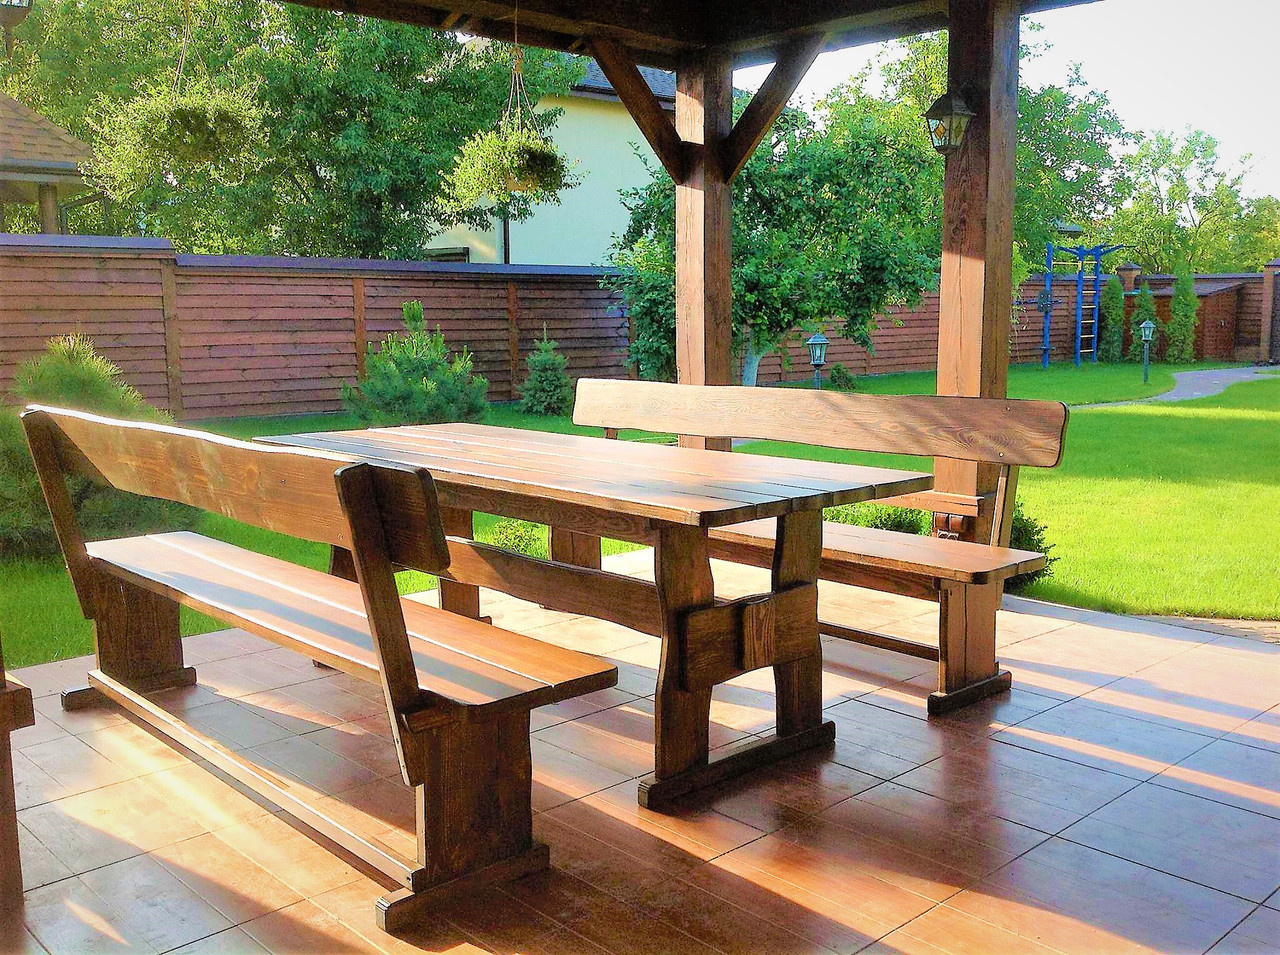 Садовая мебель из массива дерева 2200х800 от производителя для дачи, кафе, комплект Furniture set - 03, фото 1